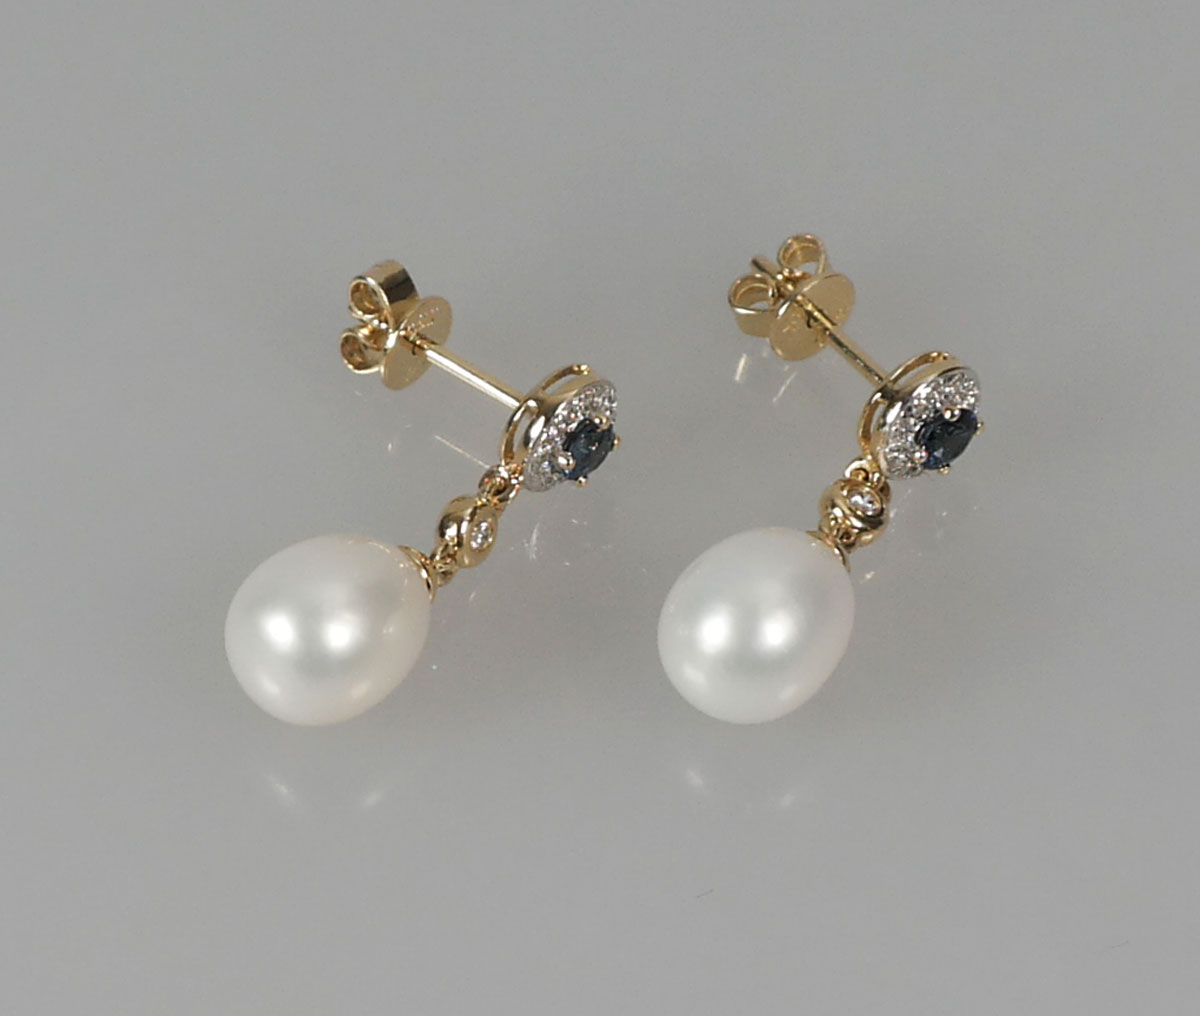 Gouden oorbellen met parels, diamanten en saffier - Antieke Sieraden - Kroone Co